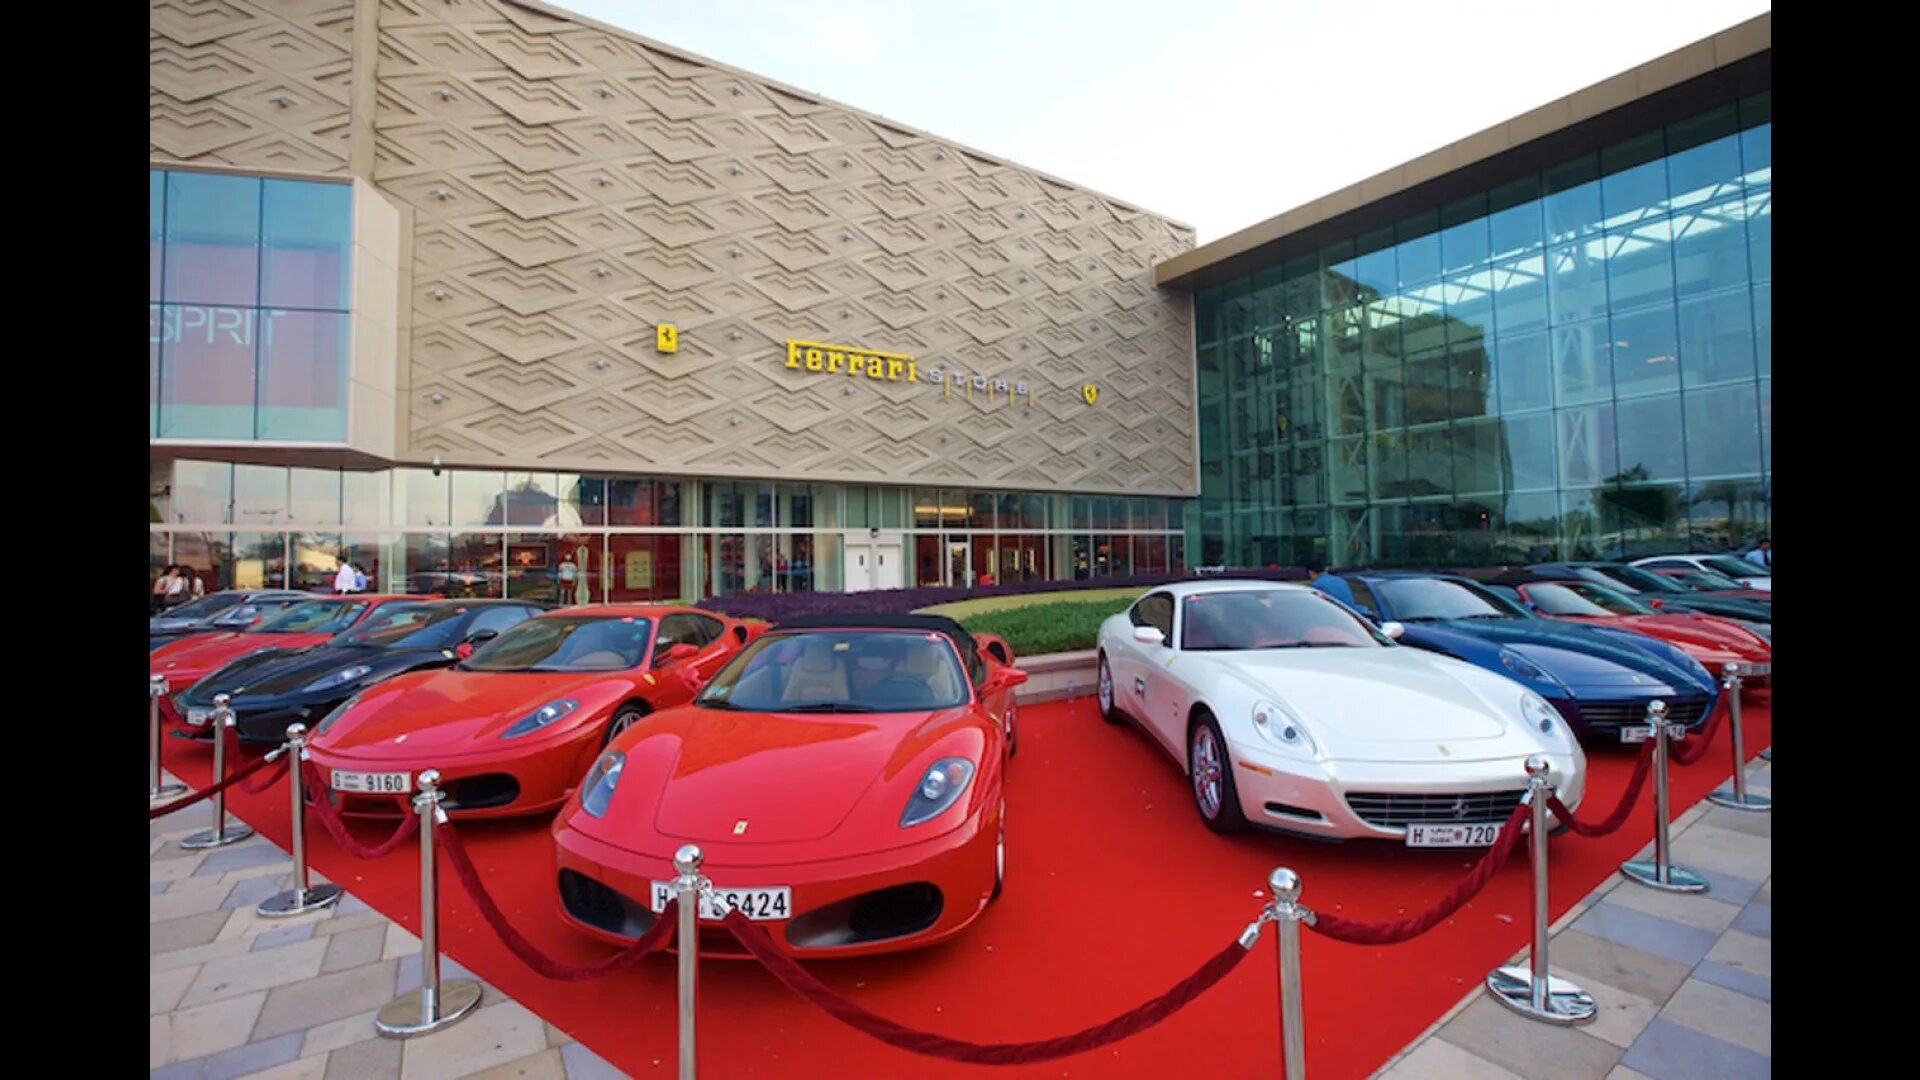 Ferrari Store Дубай. Автосалон Феррари в Дубае. Ferrari shop Dubai. Выставочный комплекс Феррари в Дубае. That is car in the shop